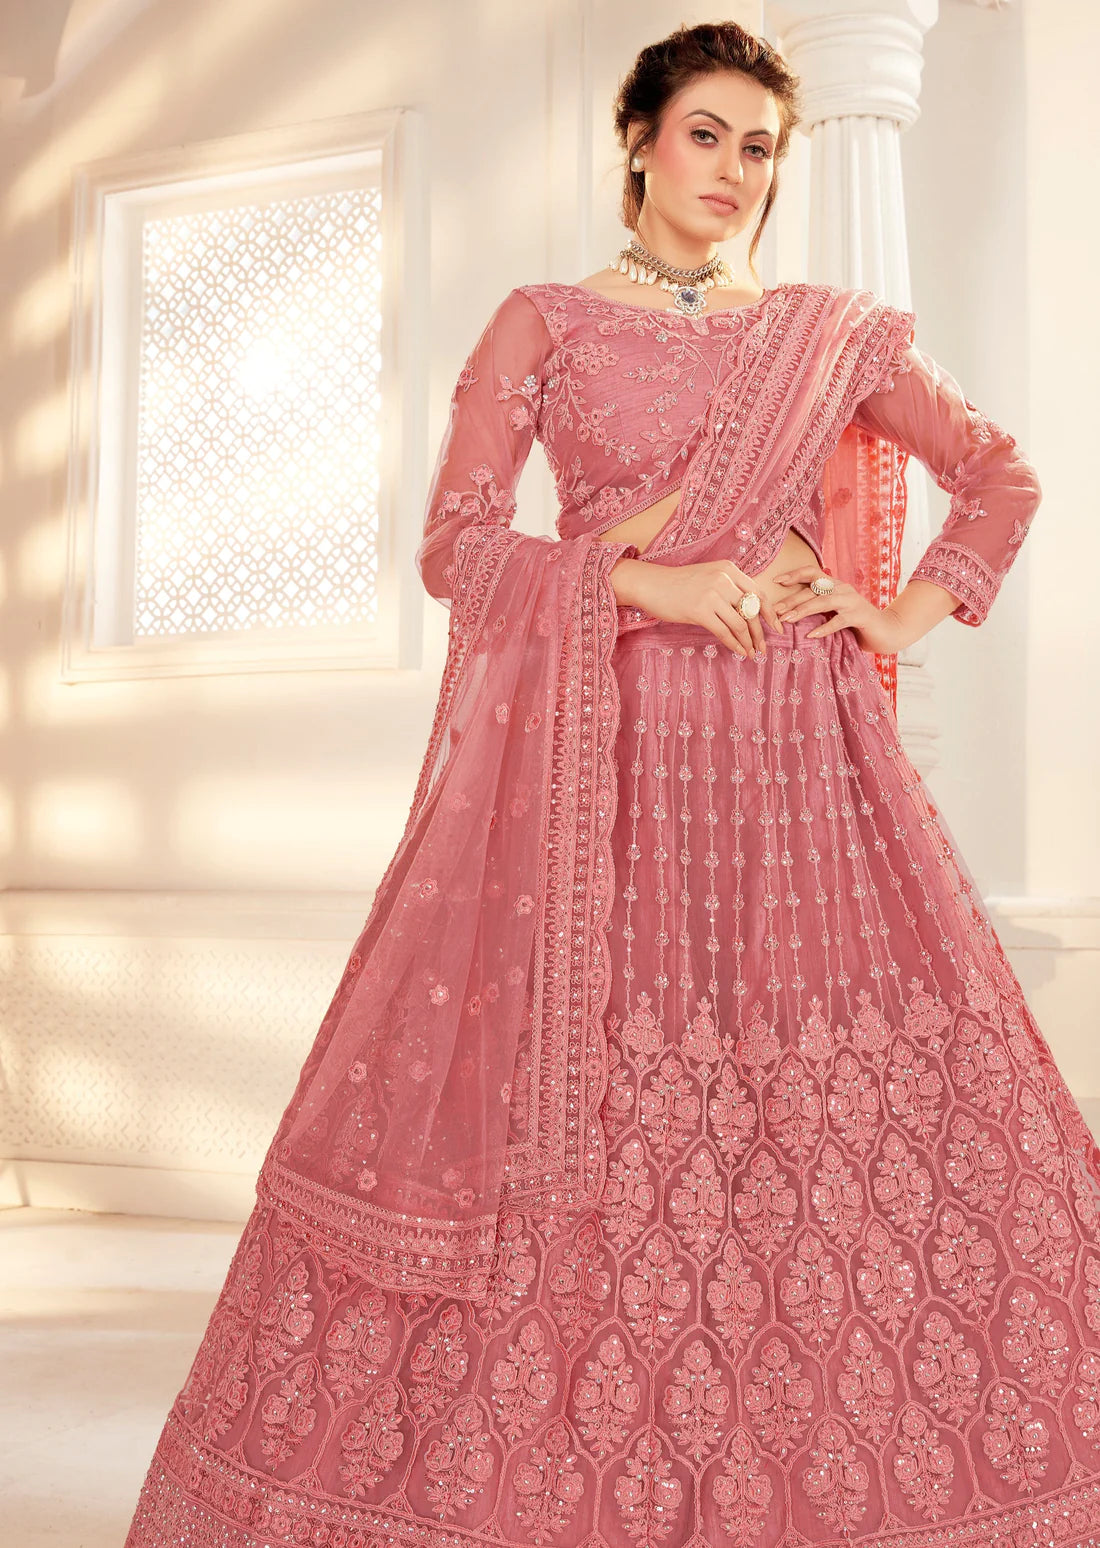 Designer light pink bridal lehenga choli online shopping for wedding.